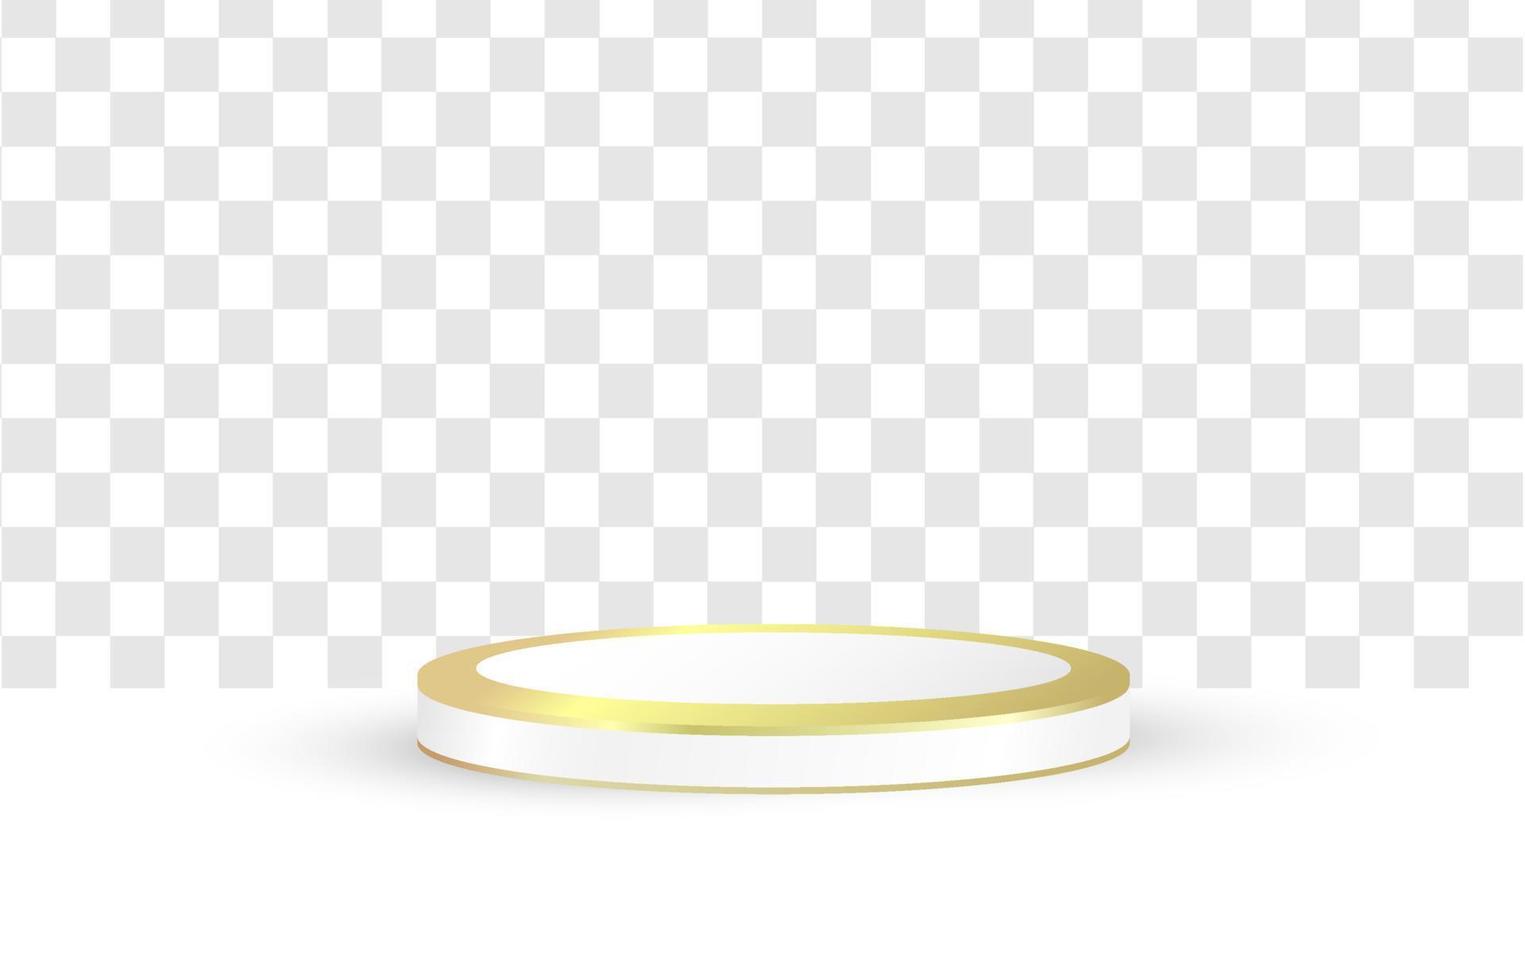 Diseño de vector de podio 3d sobre fondo blanco transparente. forma de círculo geométrico de textura de podio dorado. para escaparates de productos y maquetas publicitarias. plantillas modernas